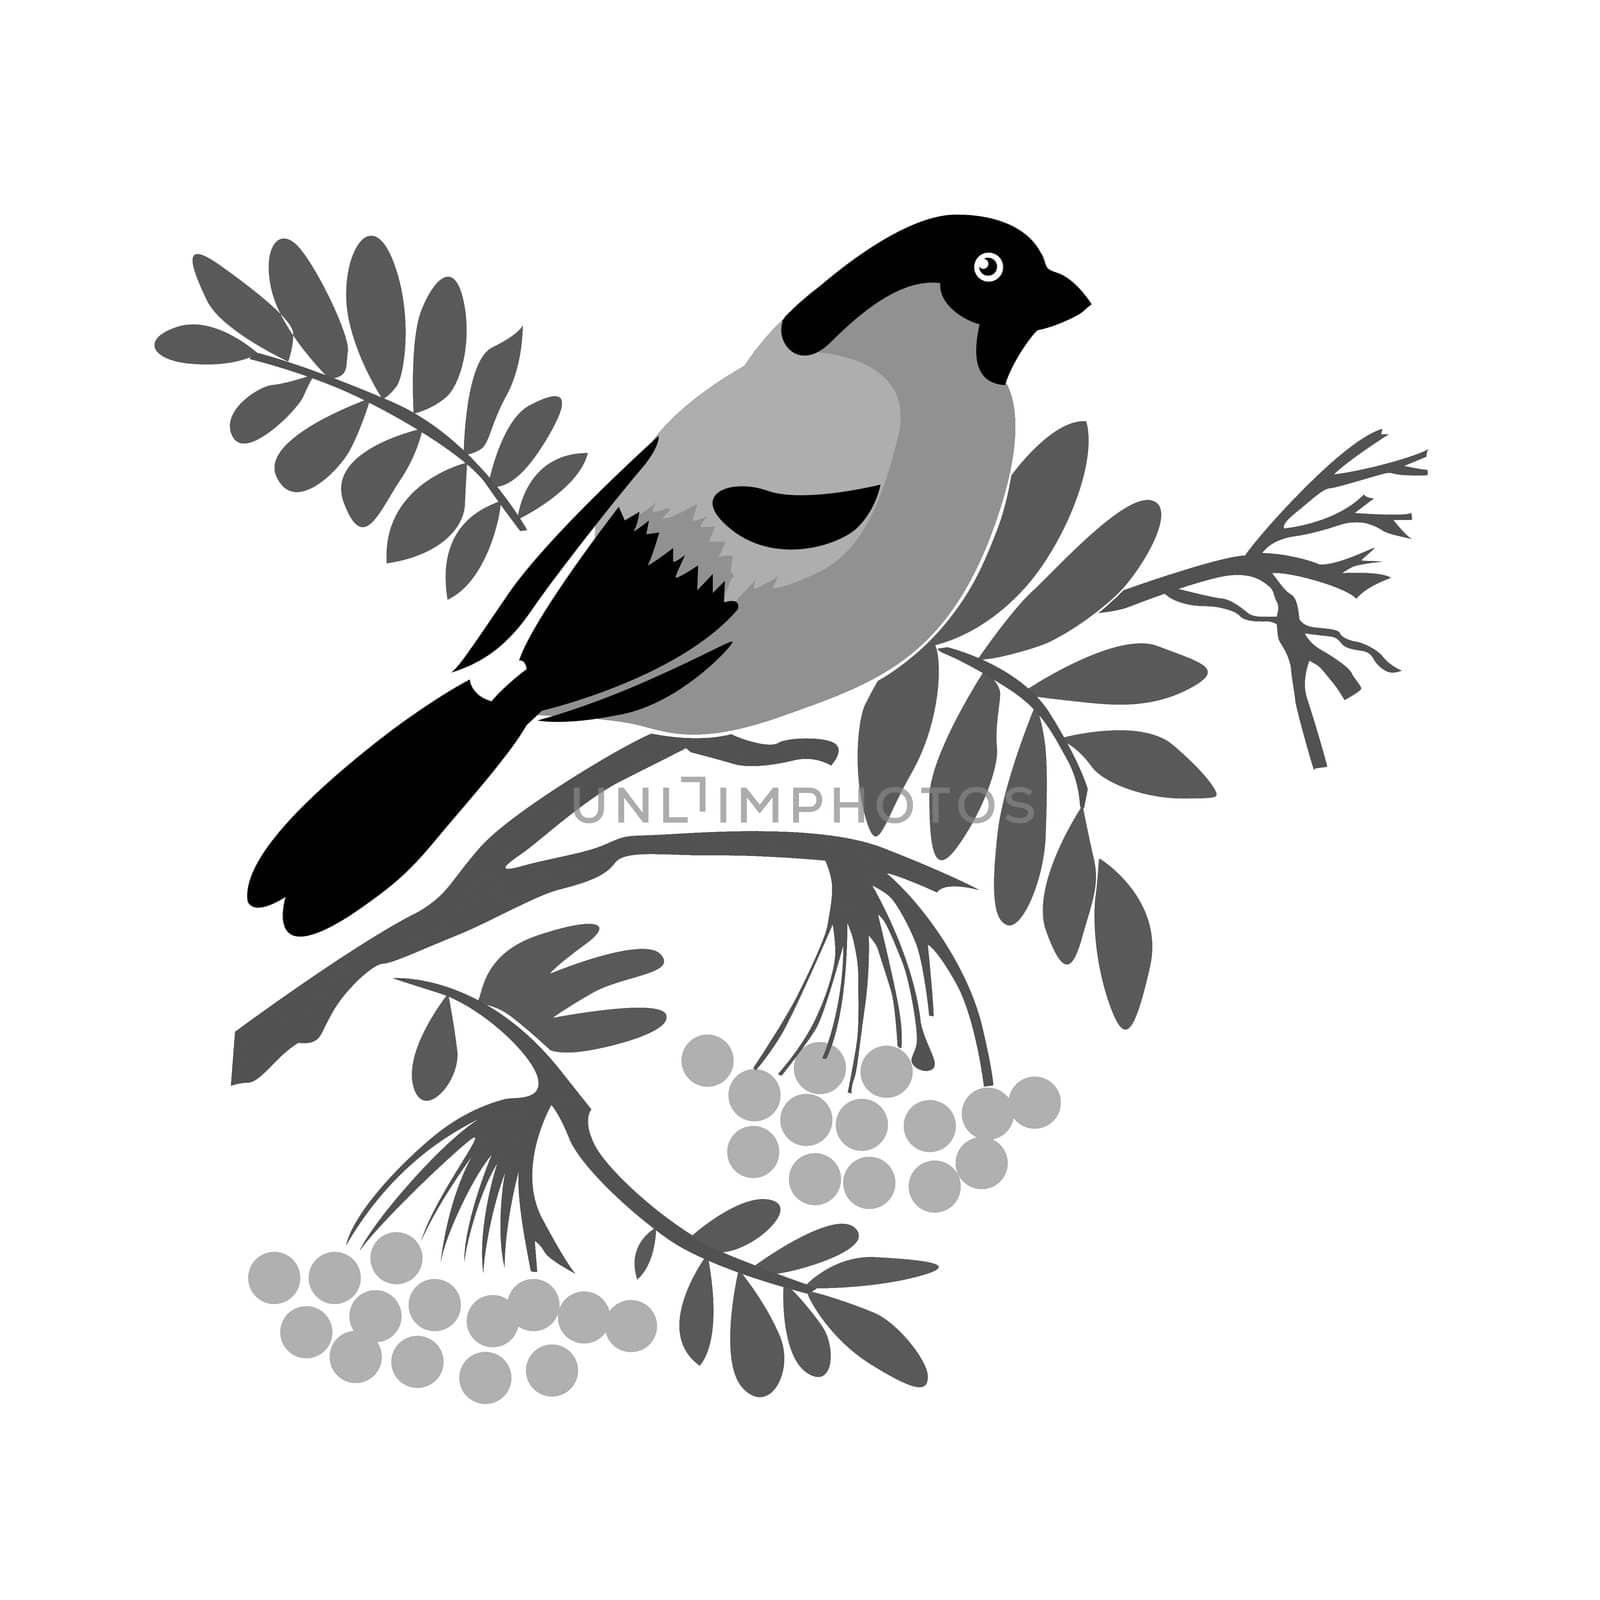 bullfinch silhouette on rowanberry branch by basel101658